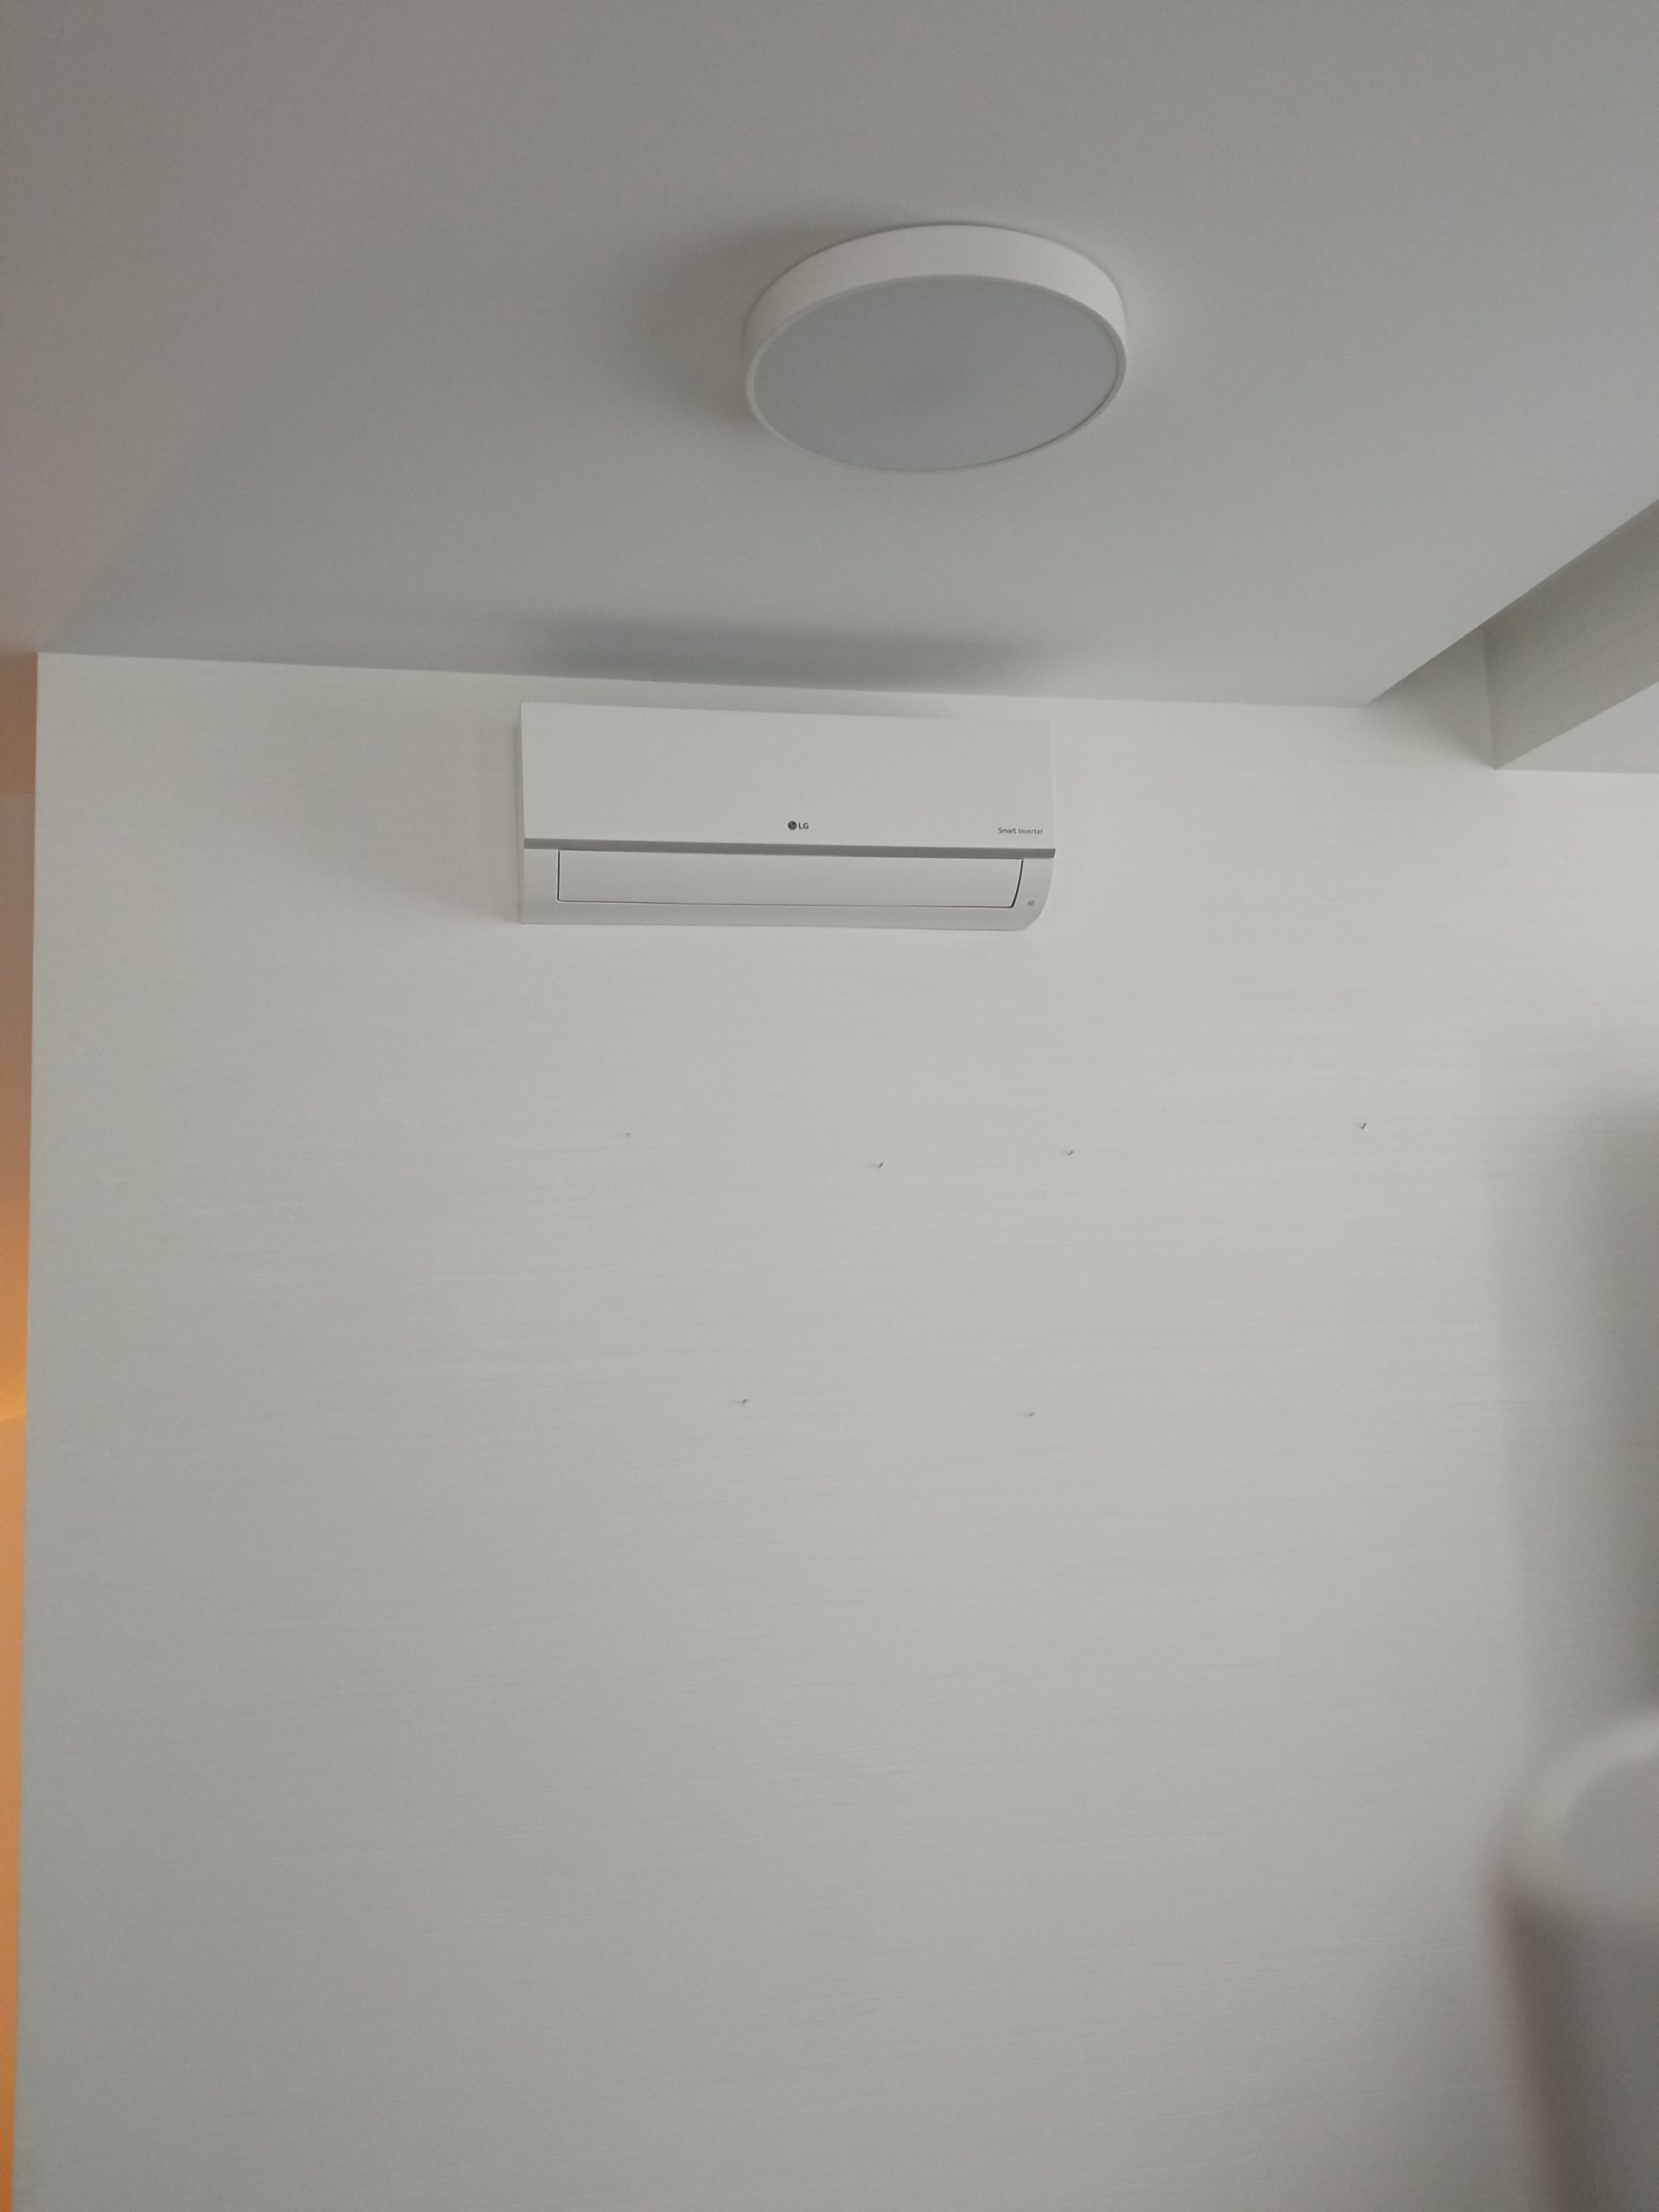 Установка кондиционер белого цвета LG Smart Inverter на белой стене